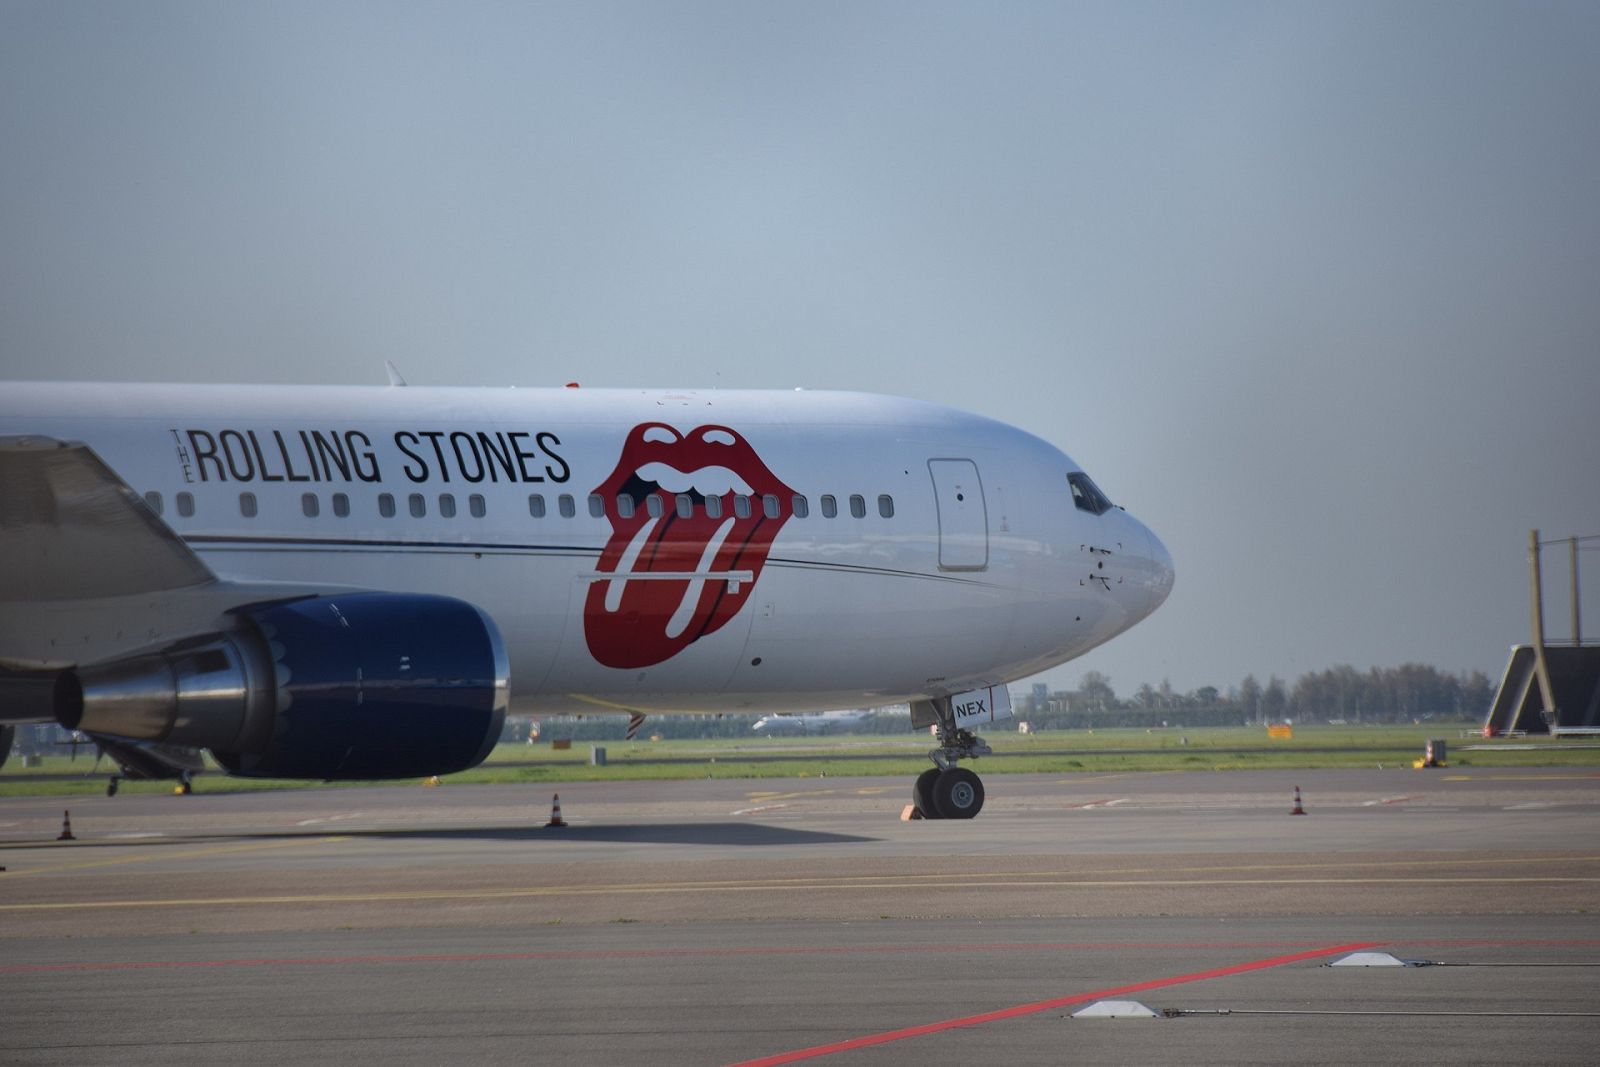 MI CAMERINO - Reinterpretando a los Rolling Stones - 28/11/2022 - Escuchar ahora